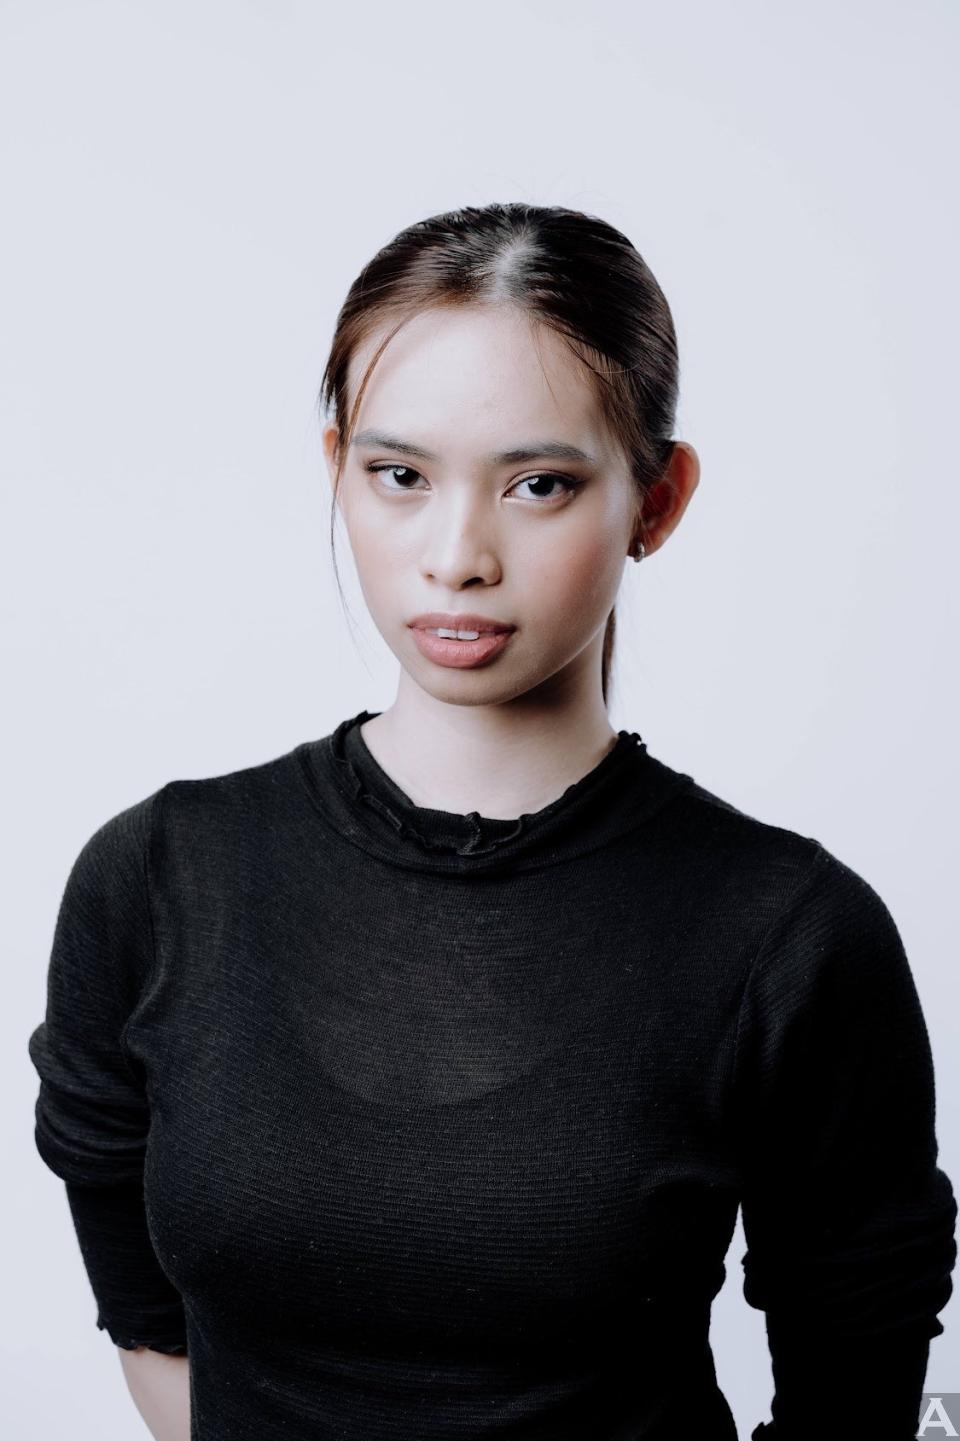 東京外国人モデル事務所アクアモデル所属アジア人モデルのカリッサ